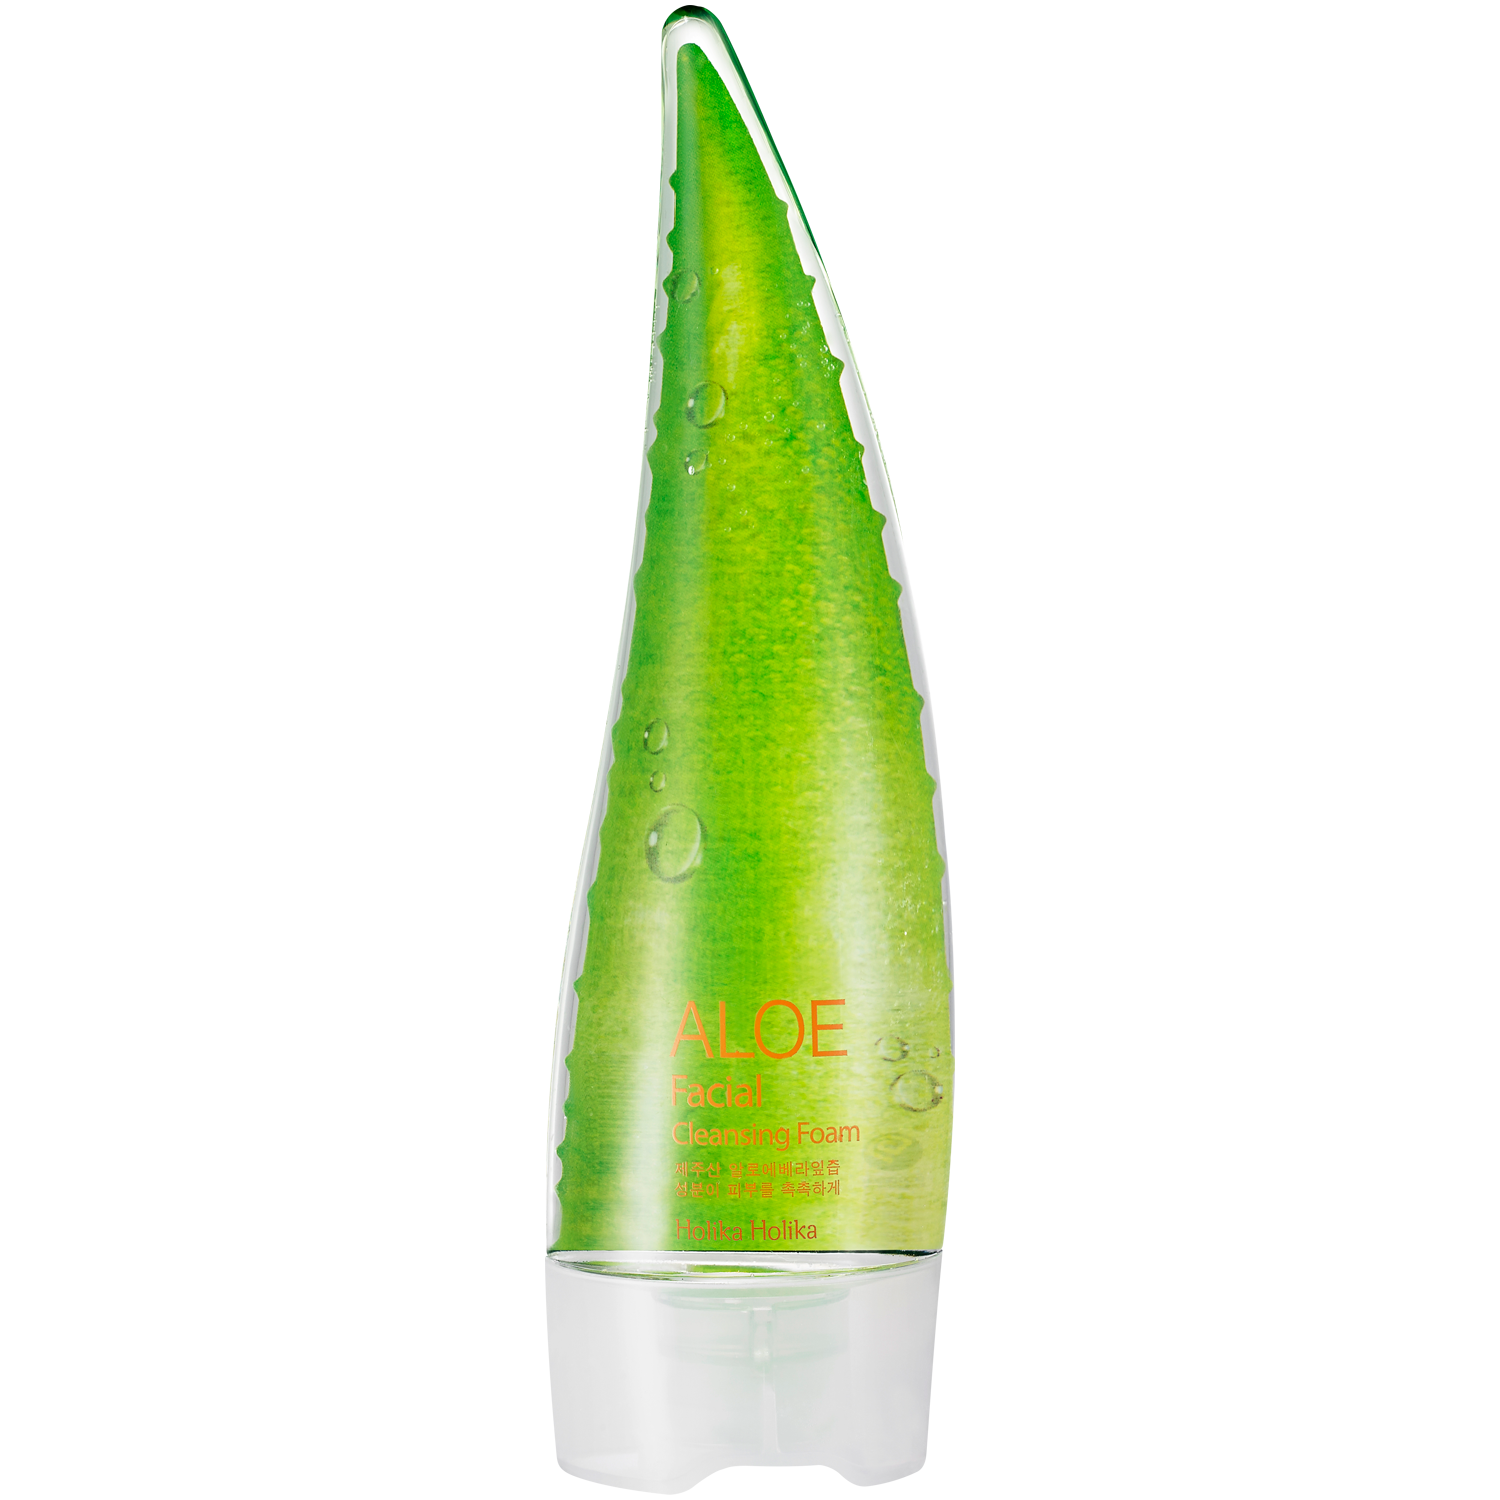 Holika Holika Aloe очищающая пенка для лица, 150 мл